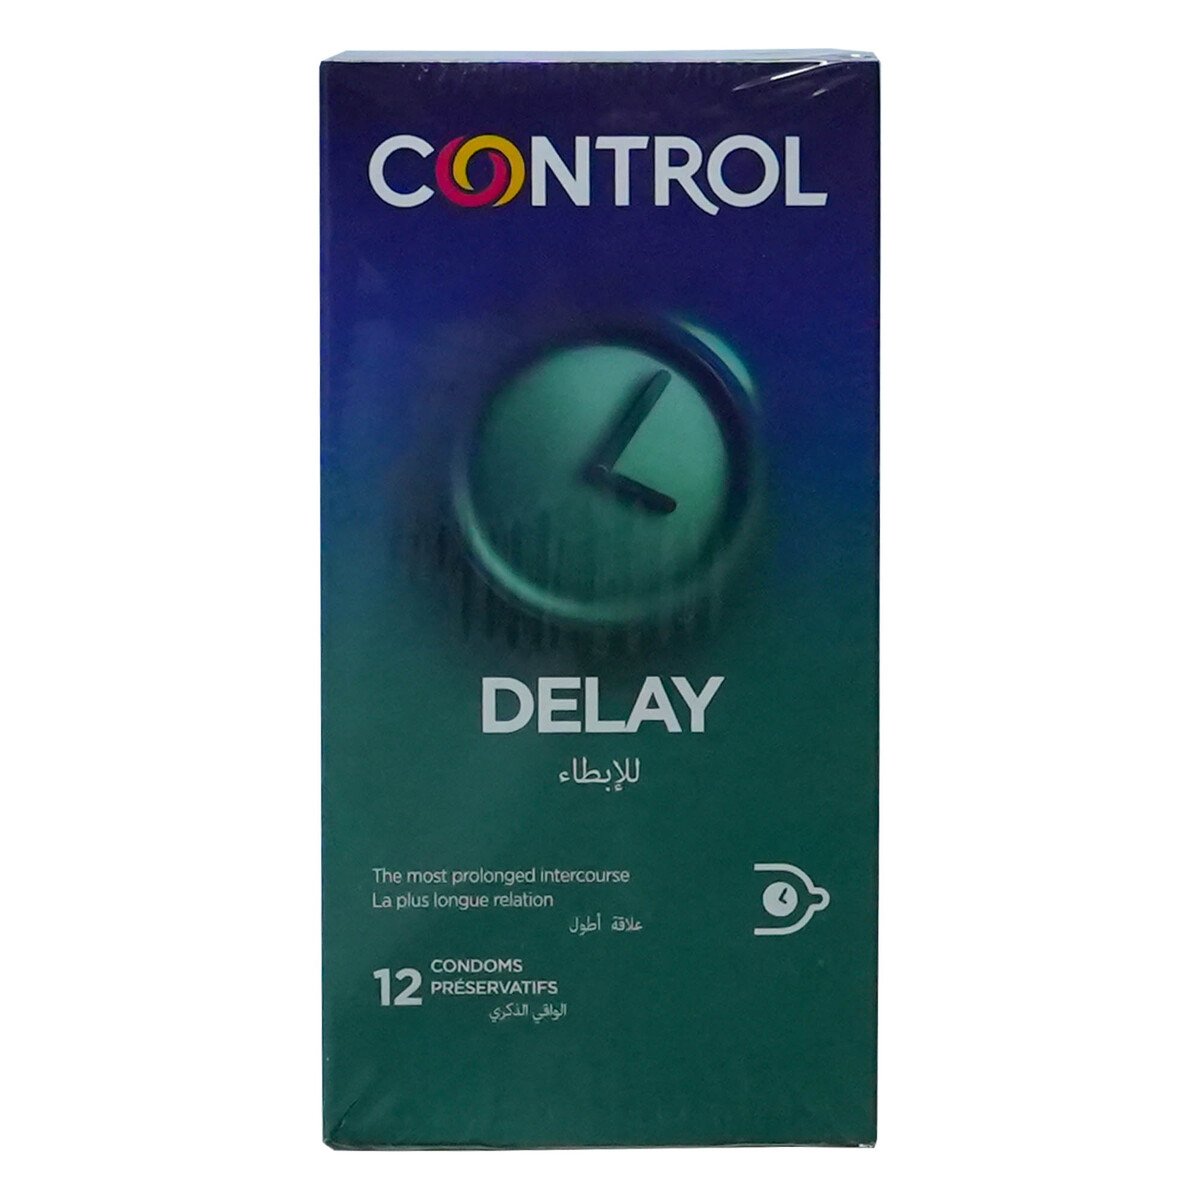 Control Delay Condom 12 pcs